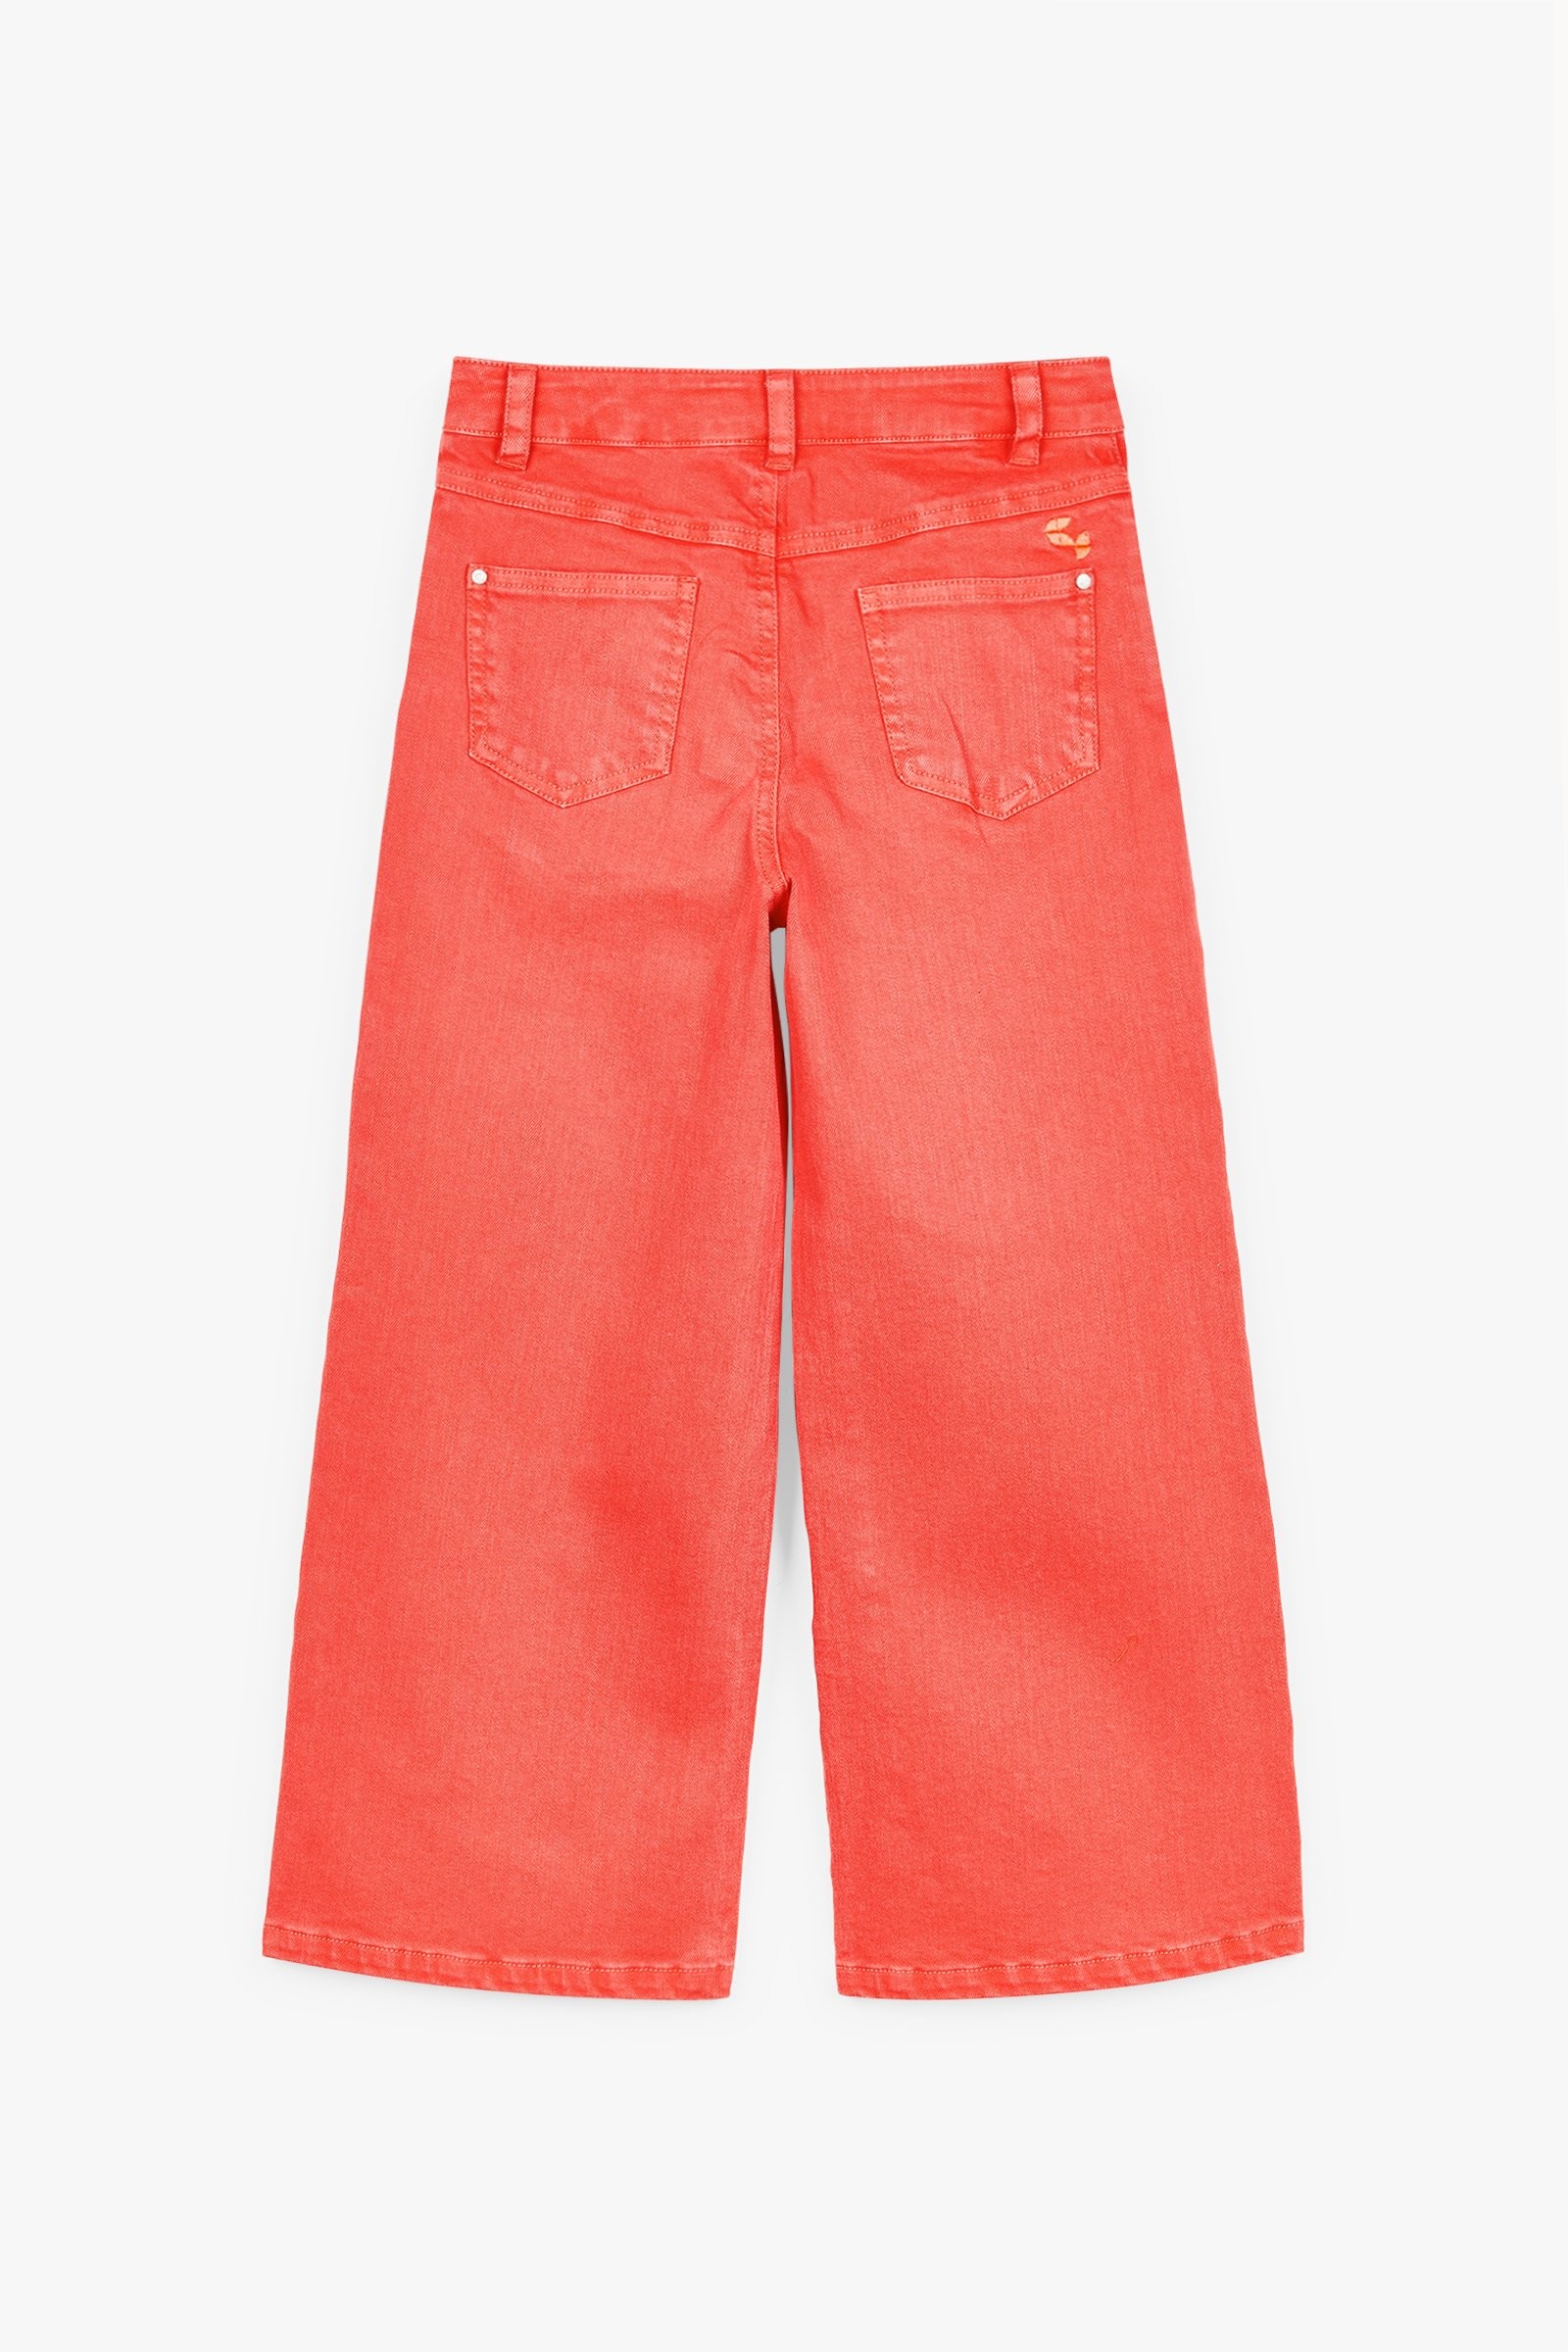 CKS Kids - TOYAWIDE - jeans longs - rouge